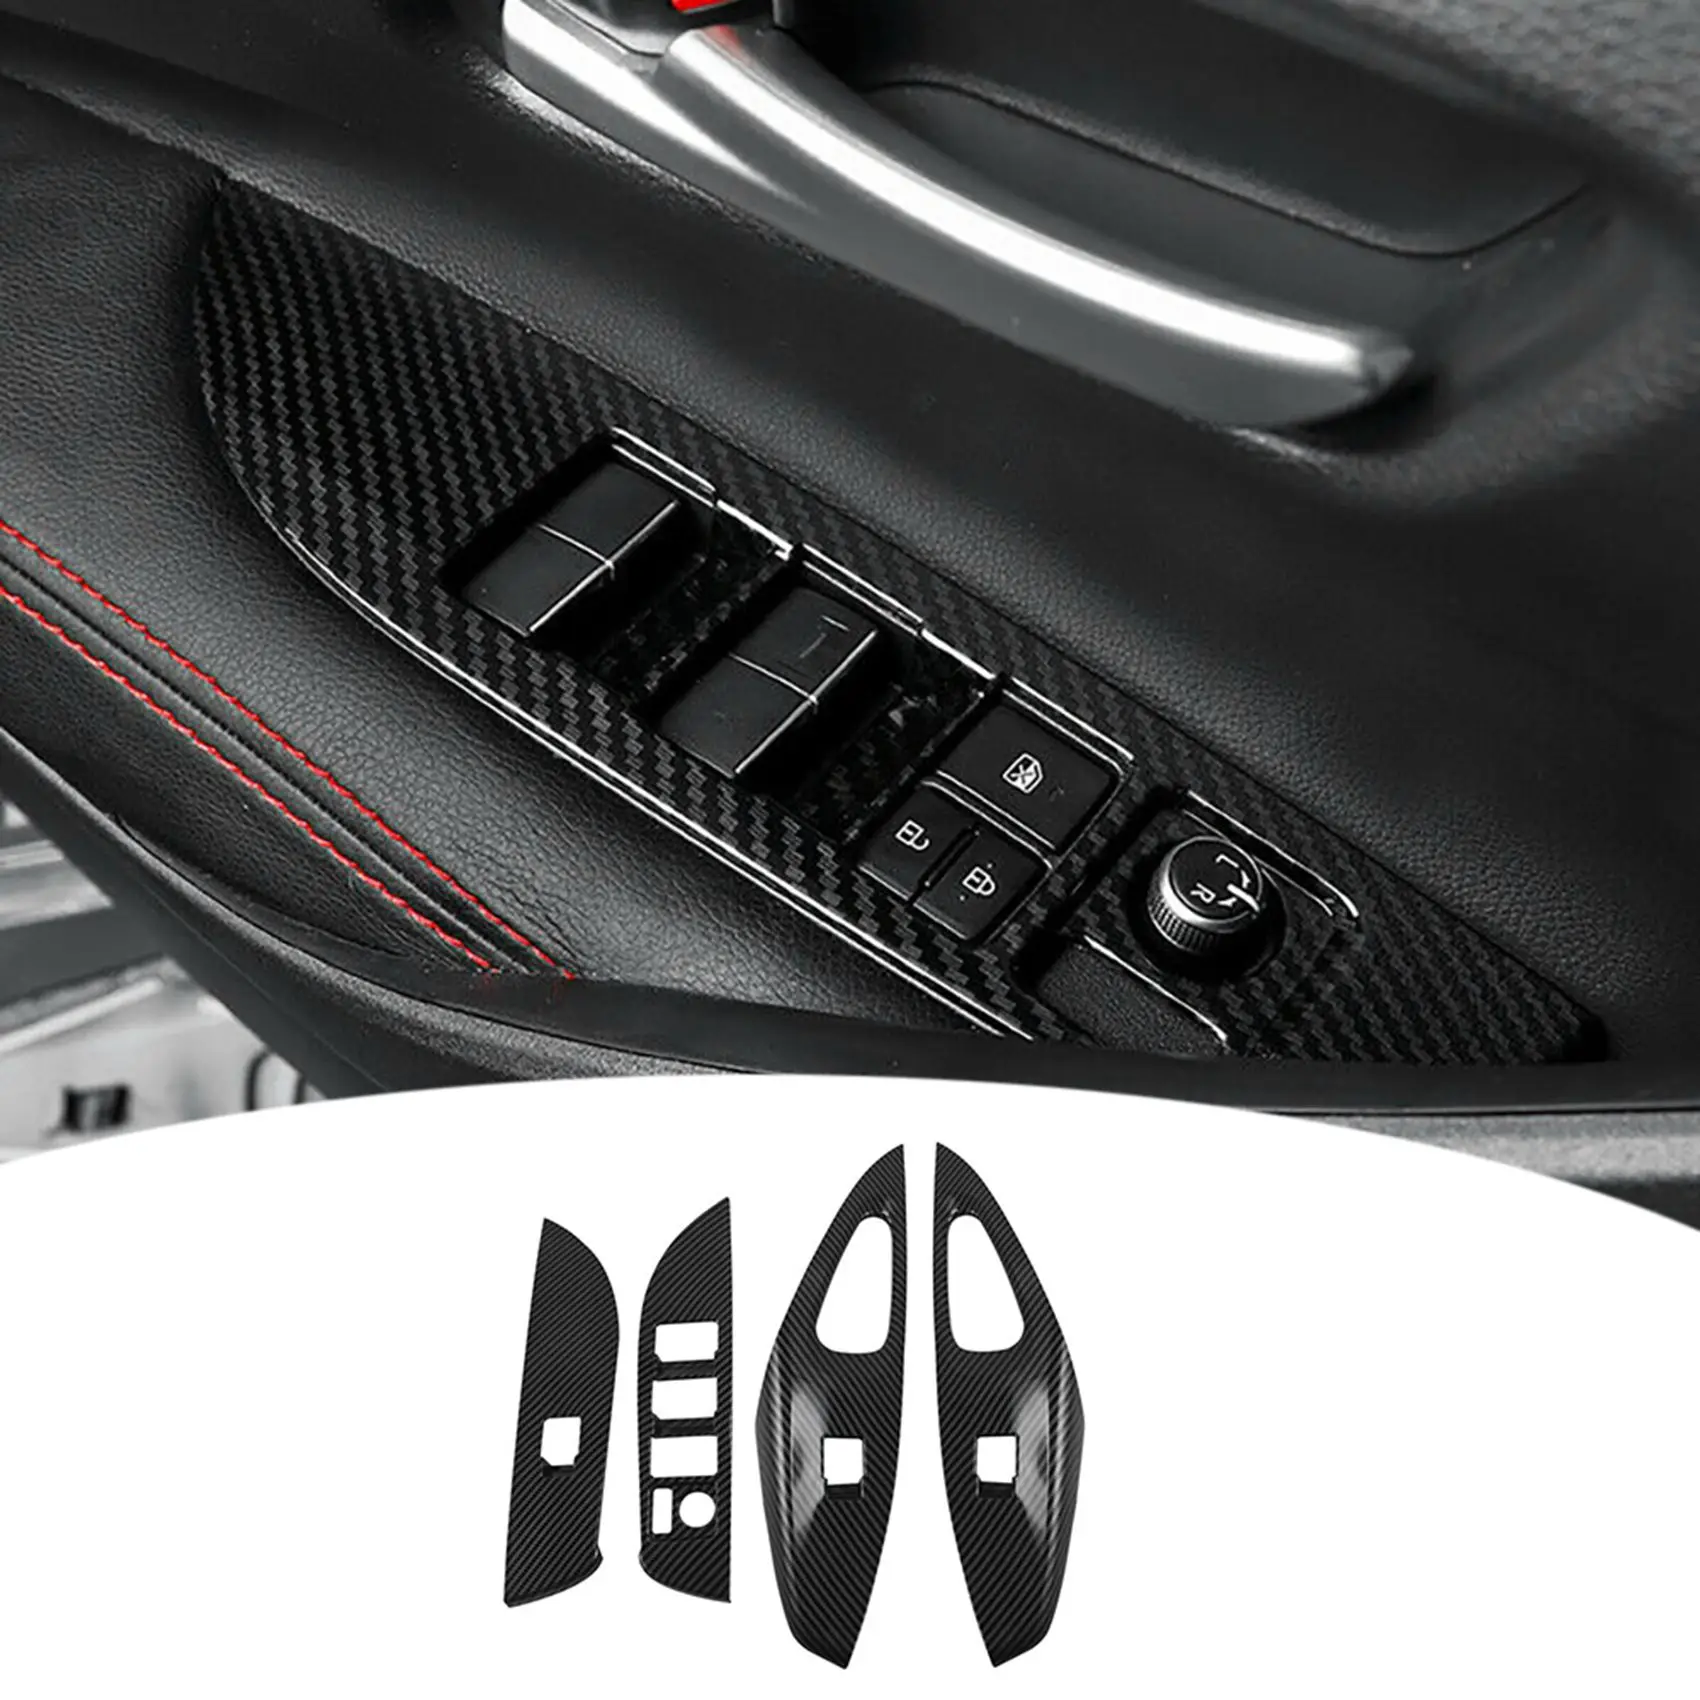 4Pcs Auto okenného Skla Výťah Tlačidlo Spínača Kryt Čalúnenie Dverí, lakťová opierka Panel pre LHD Toyota Corolla Kríž 2019 20202